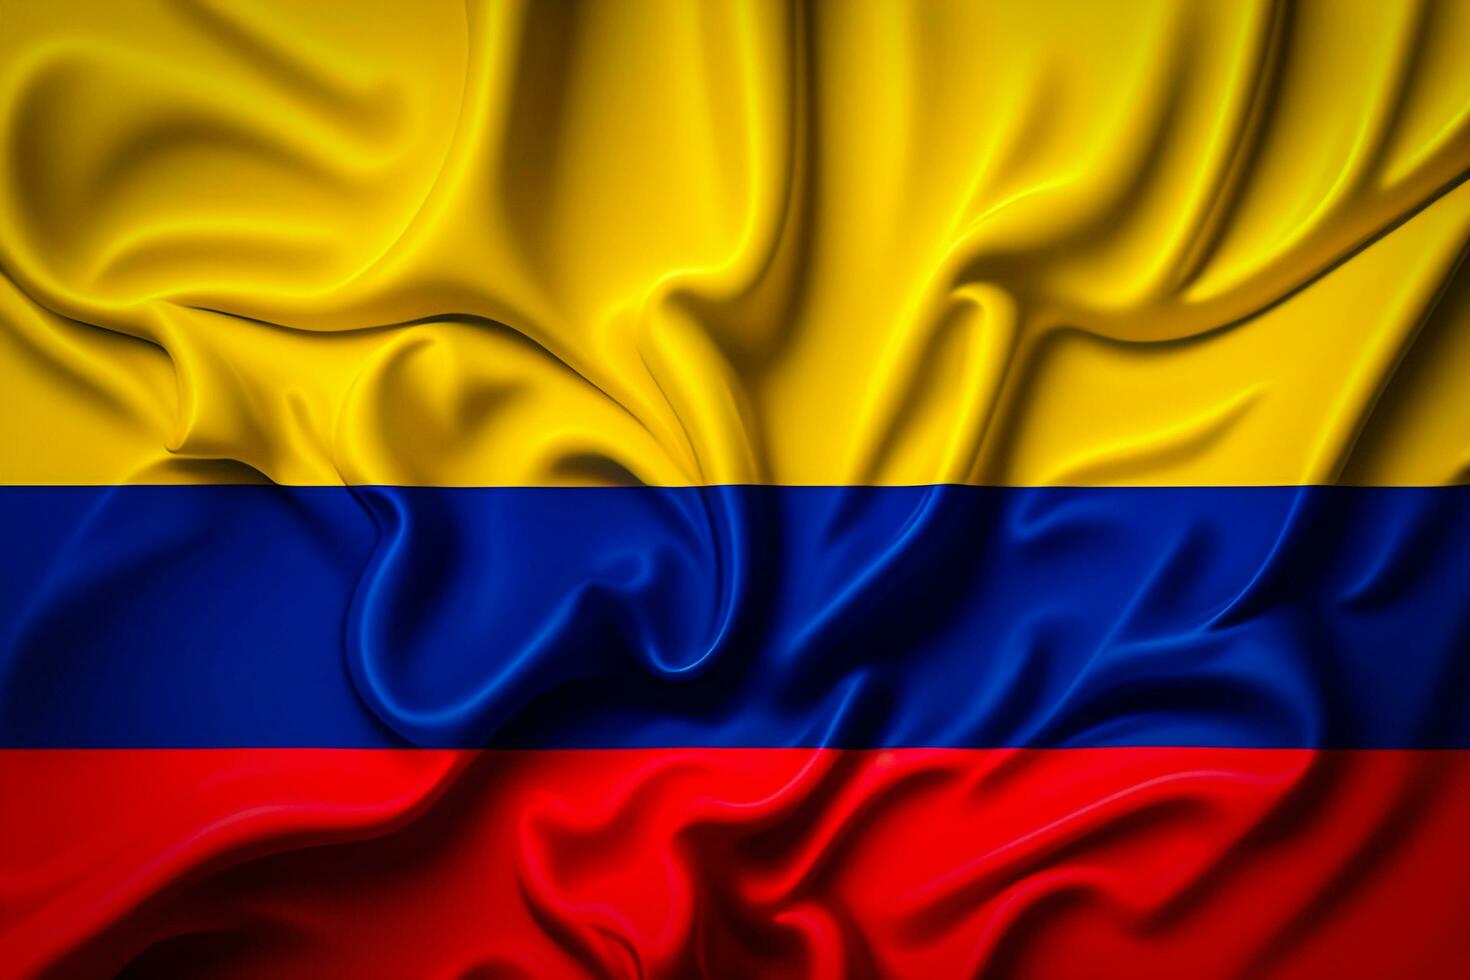 texturizado realista Colômbia bandeira fundo foto